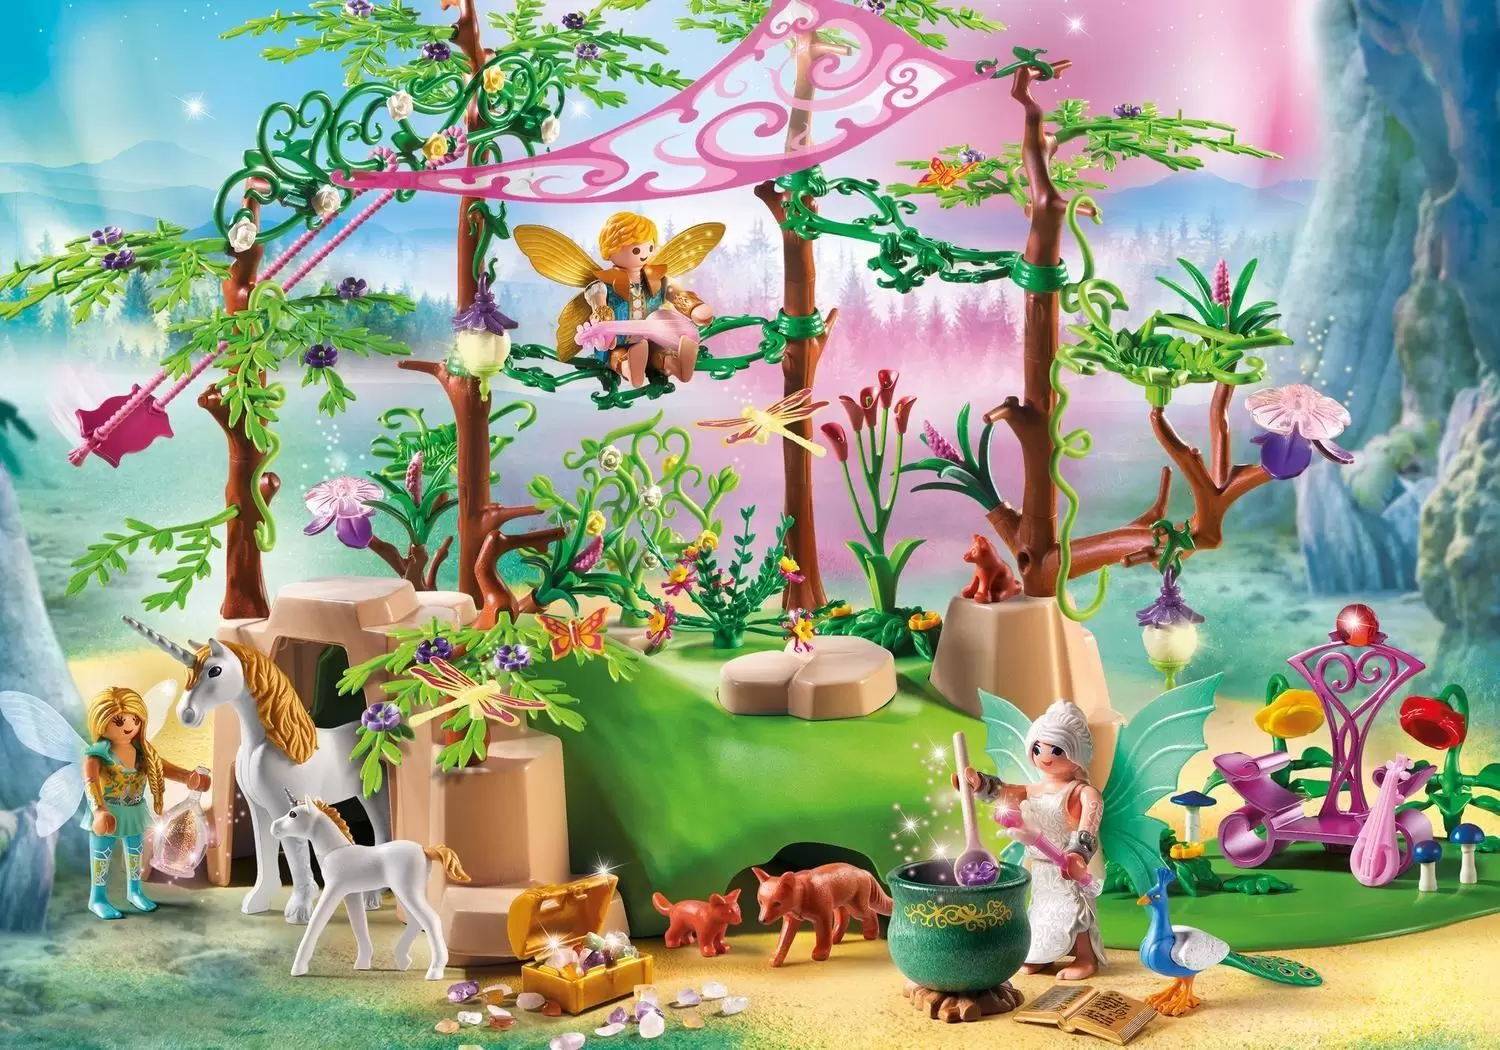 Playmobil Fairies - Magical fairy forest